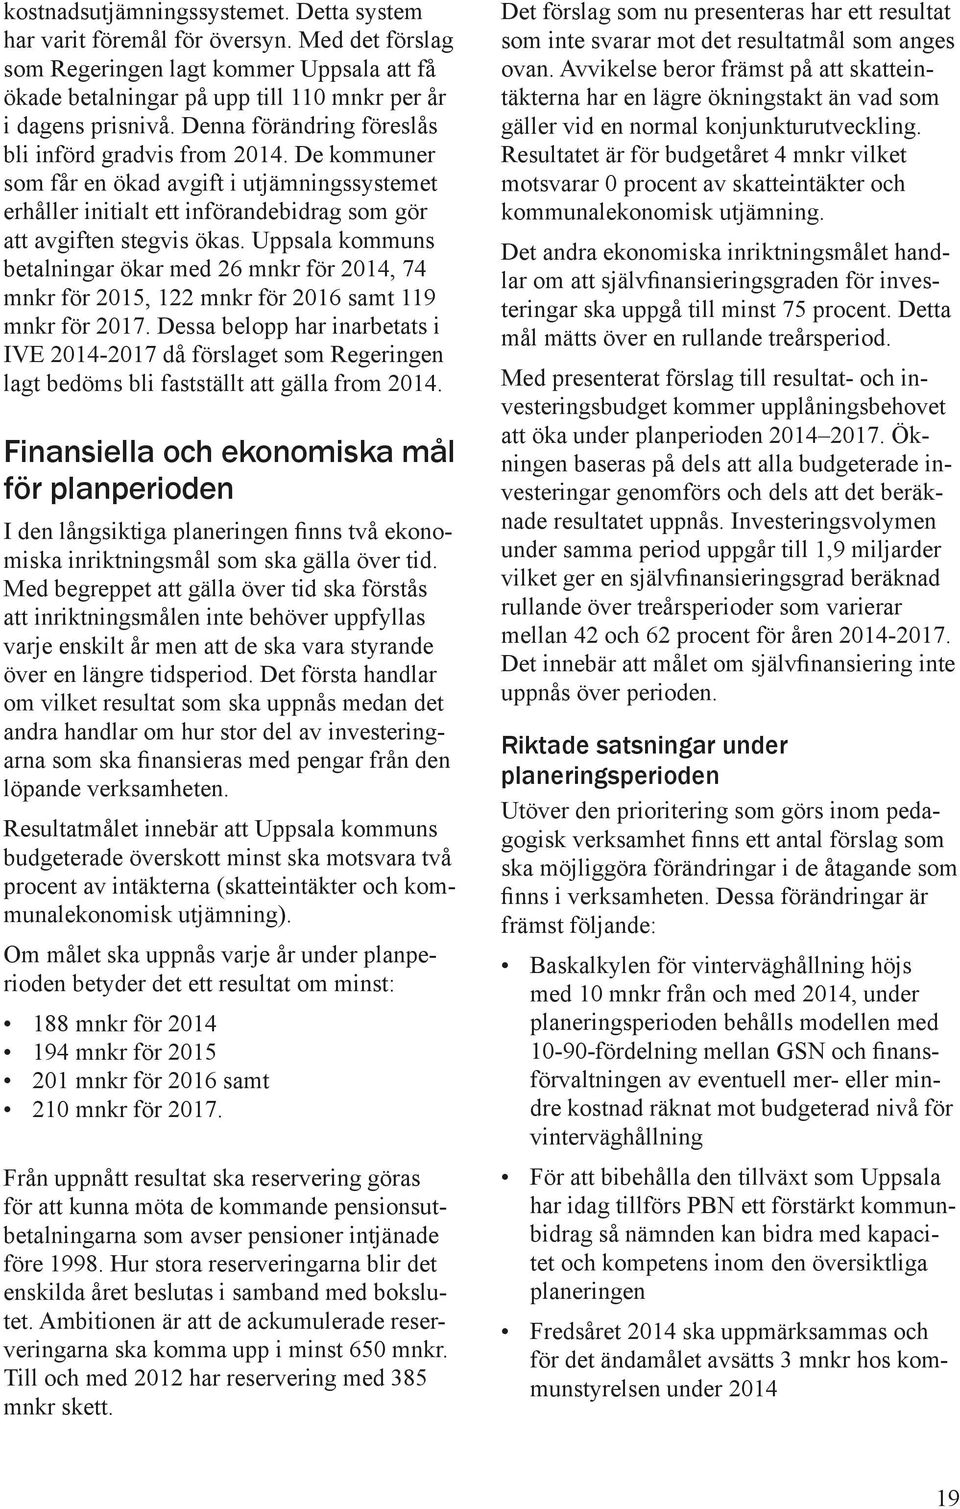 Uppsala kommuns betalningar ökar med 26 mnkr för 2014, 74 mnkr för 2015, 122 mnkr för 2016 samt 119 mnkr för 2017.